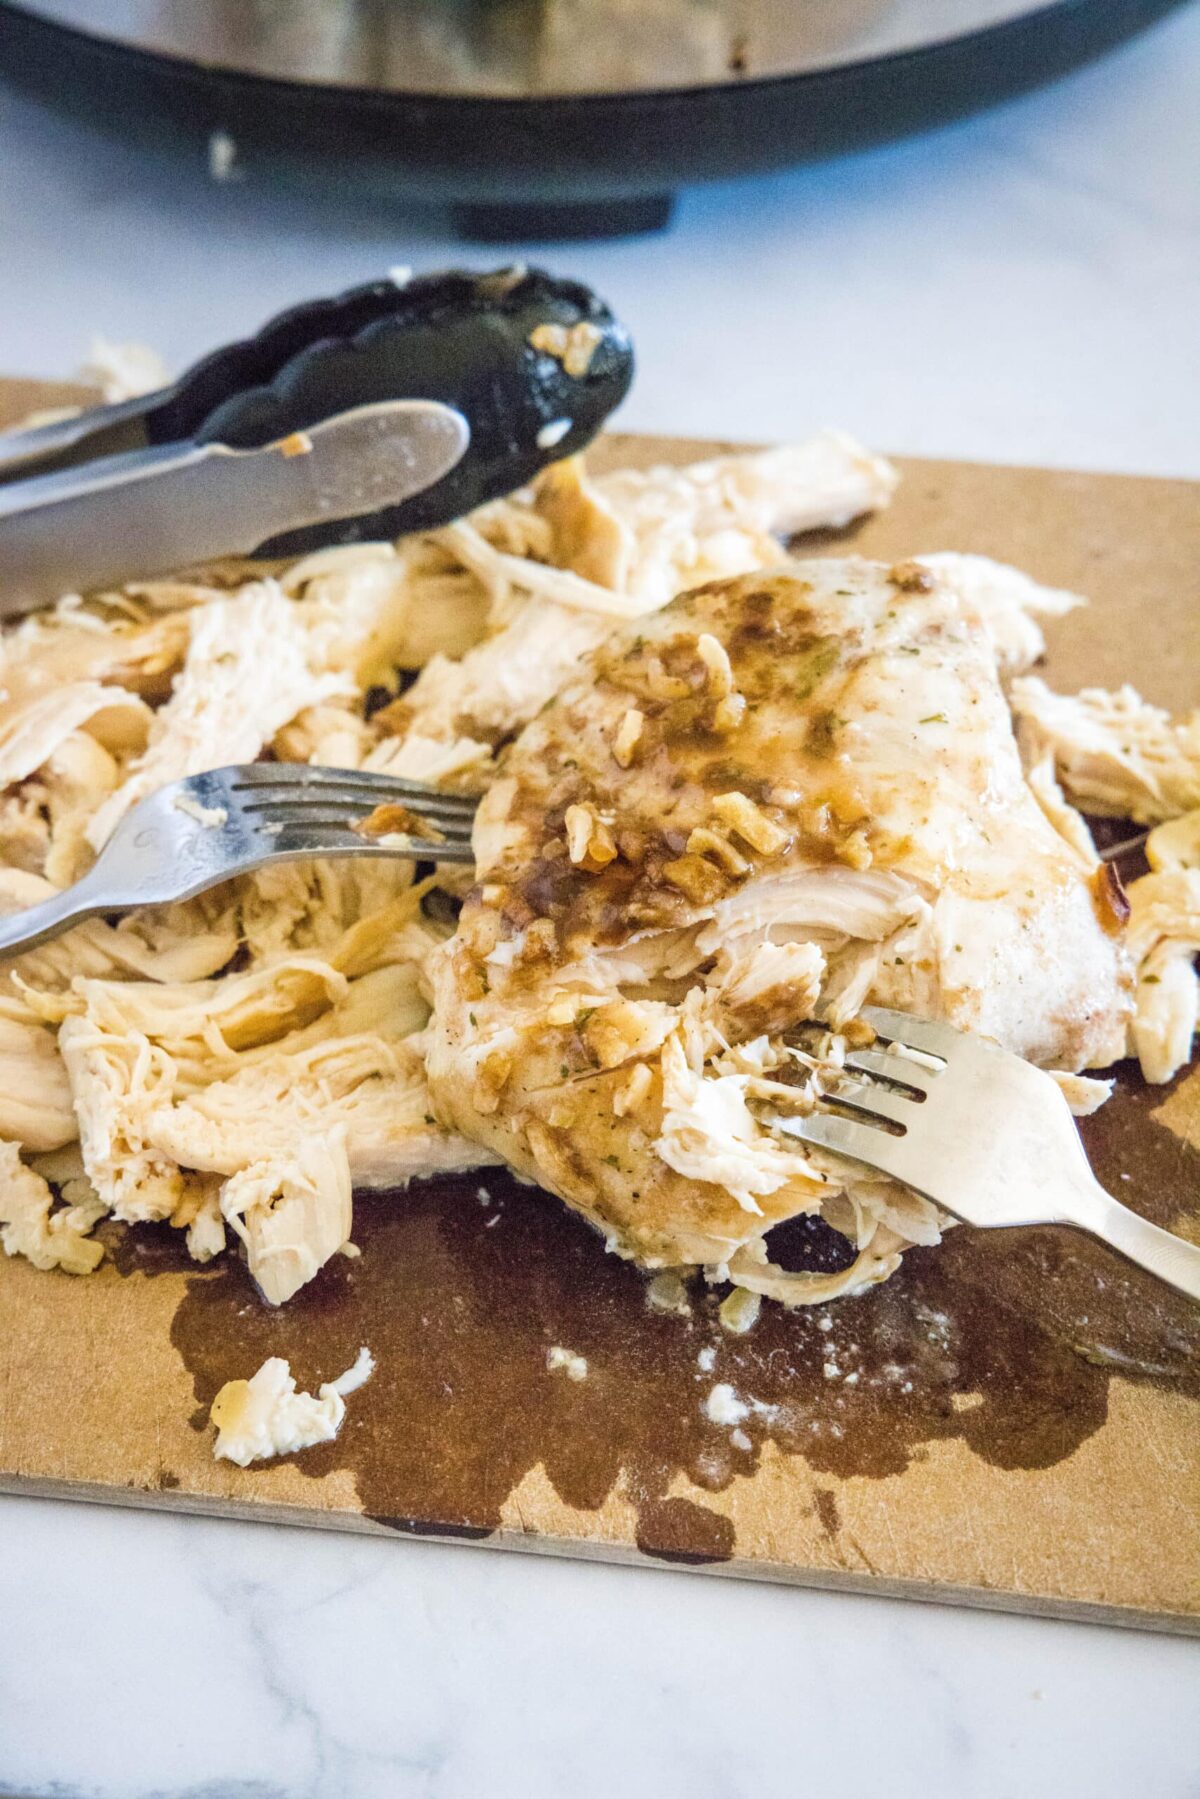 Poitrines de poulet cuites sur une planche à découper avec une paire de pinces, avec deux fourchettes pour les déchiqueter